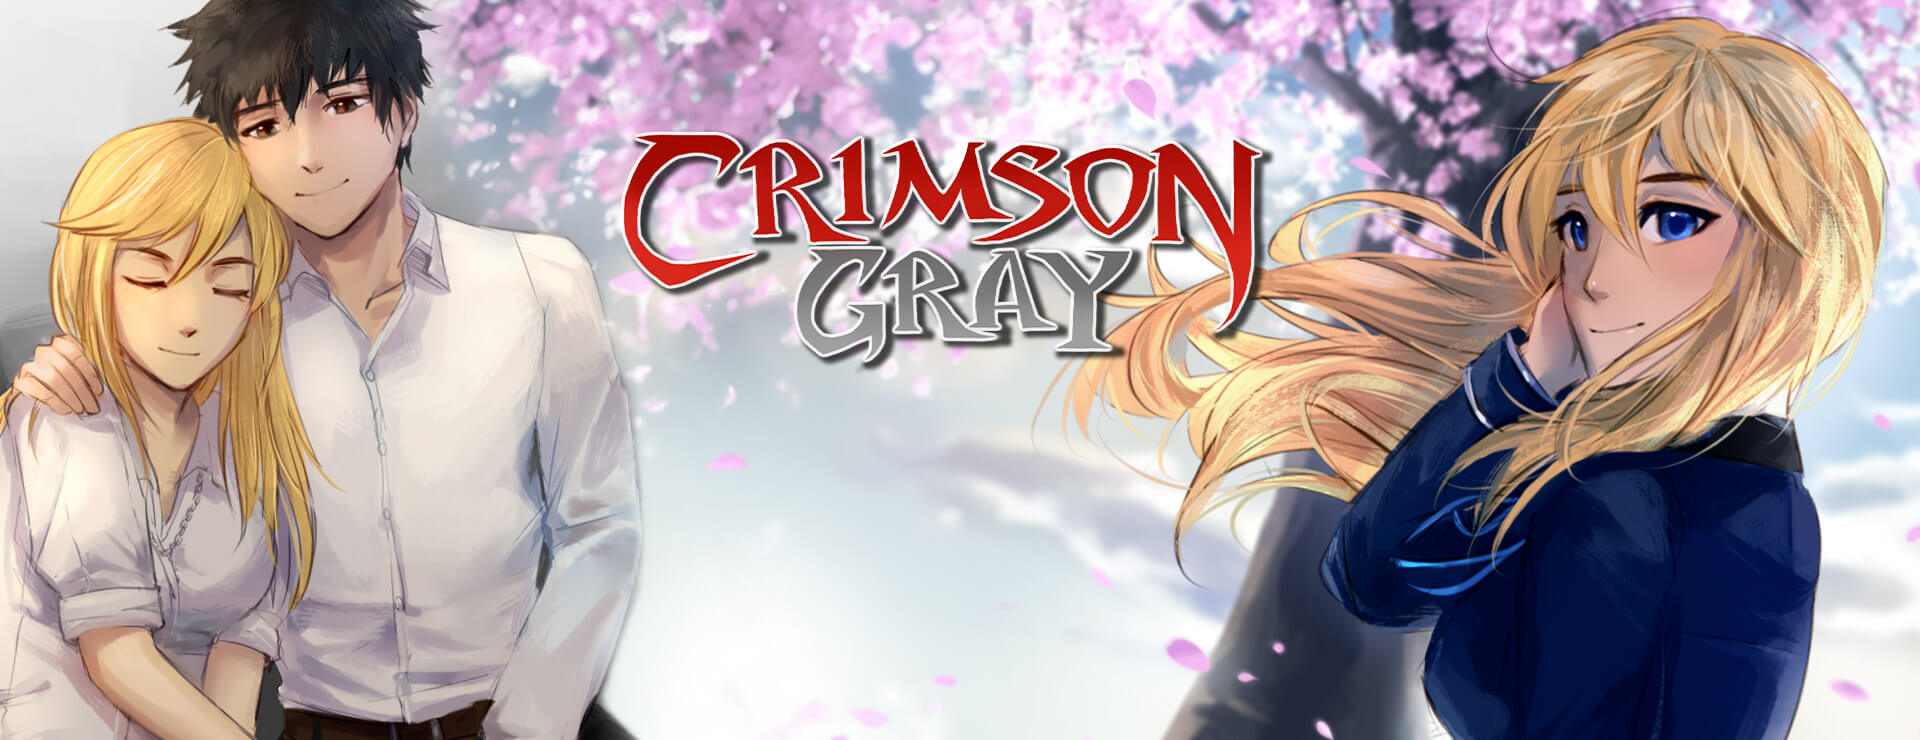 Crimson Gray (SFW Version) - アクションアドベンチャー ゲーム